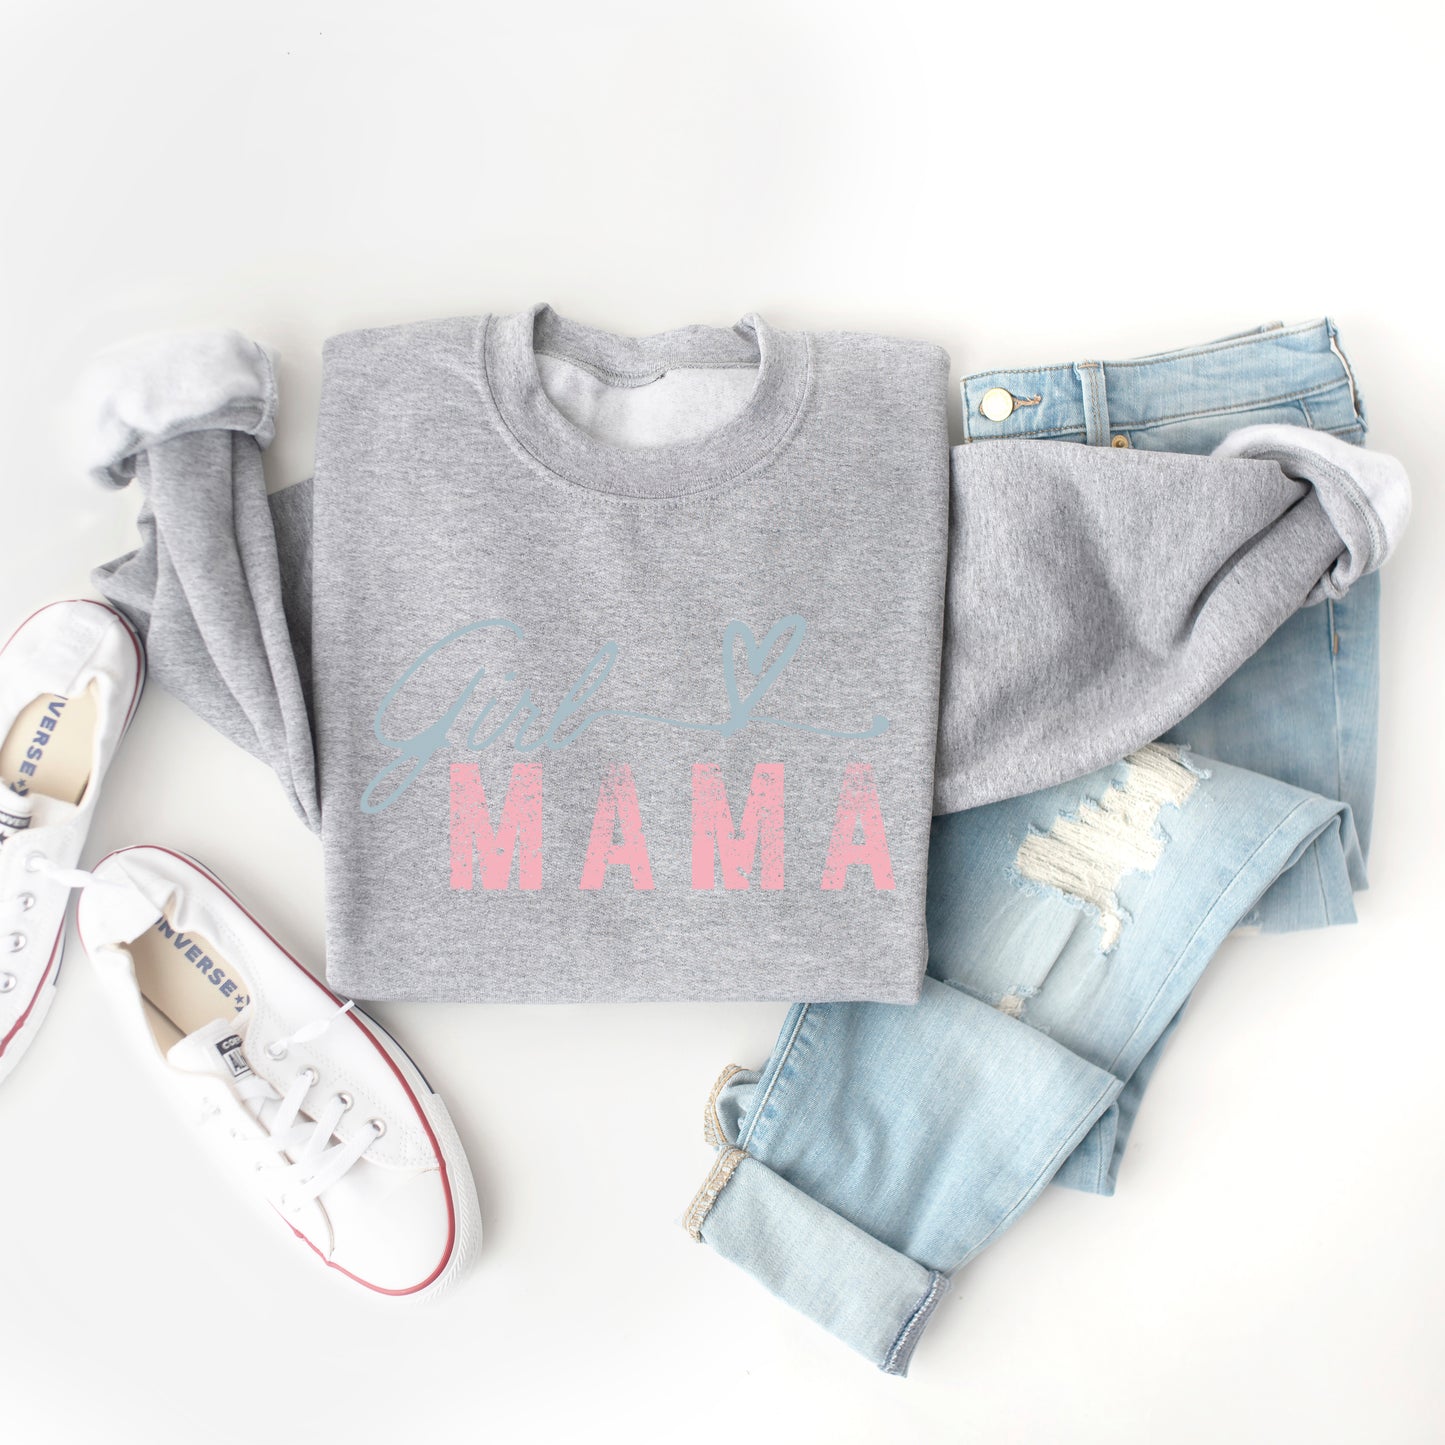 Girl Mama Heart Colorful | Sweatshirt